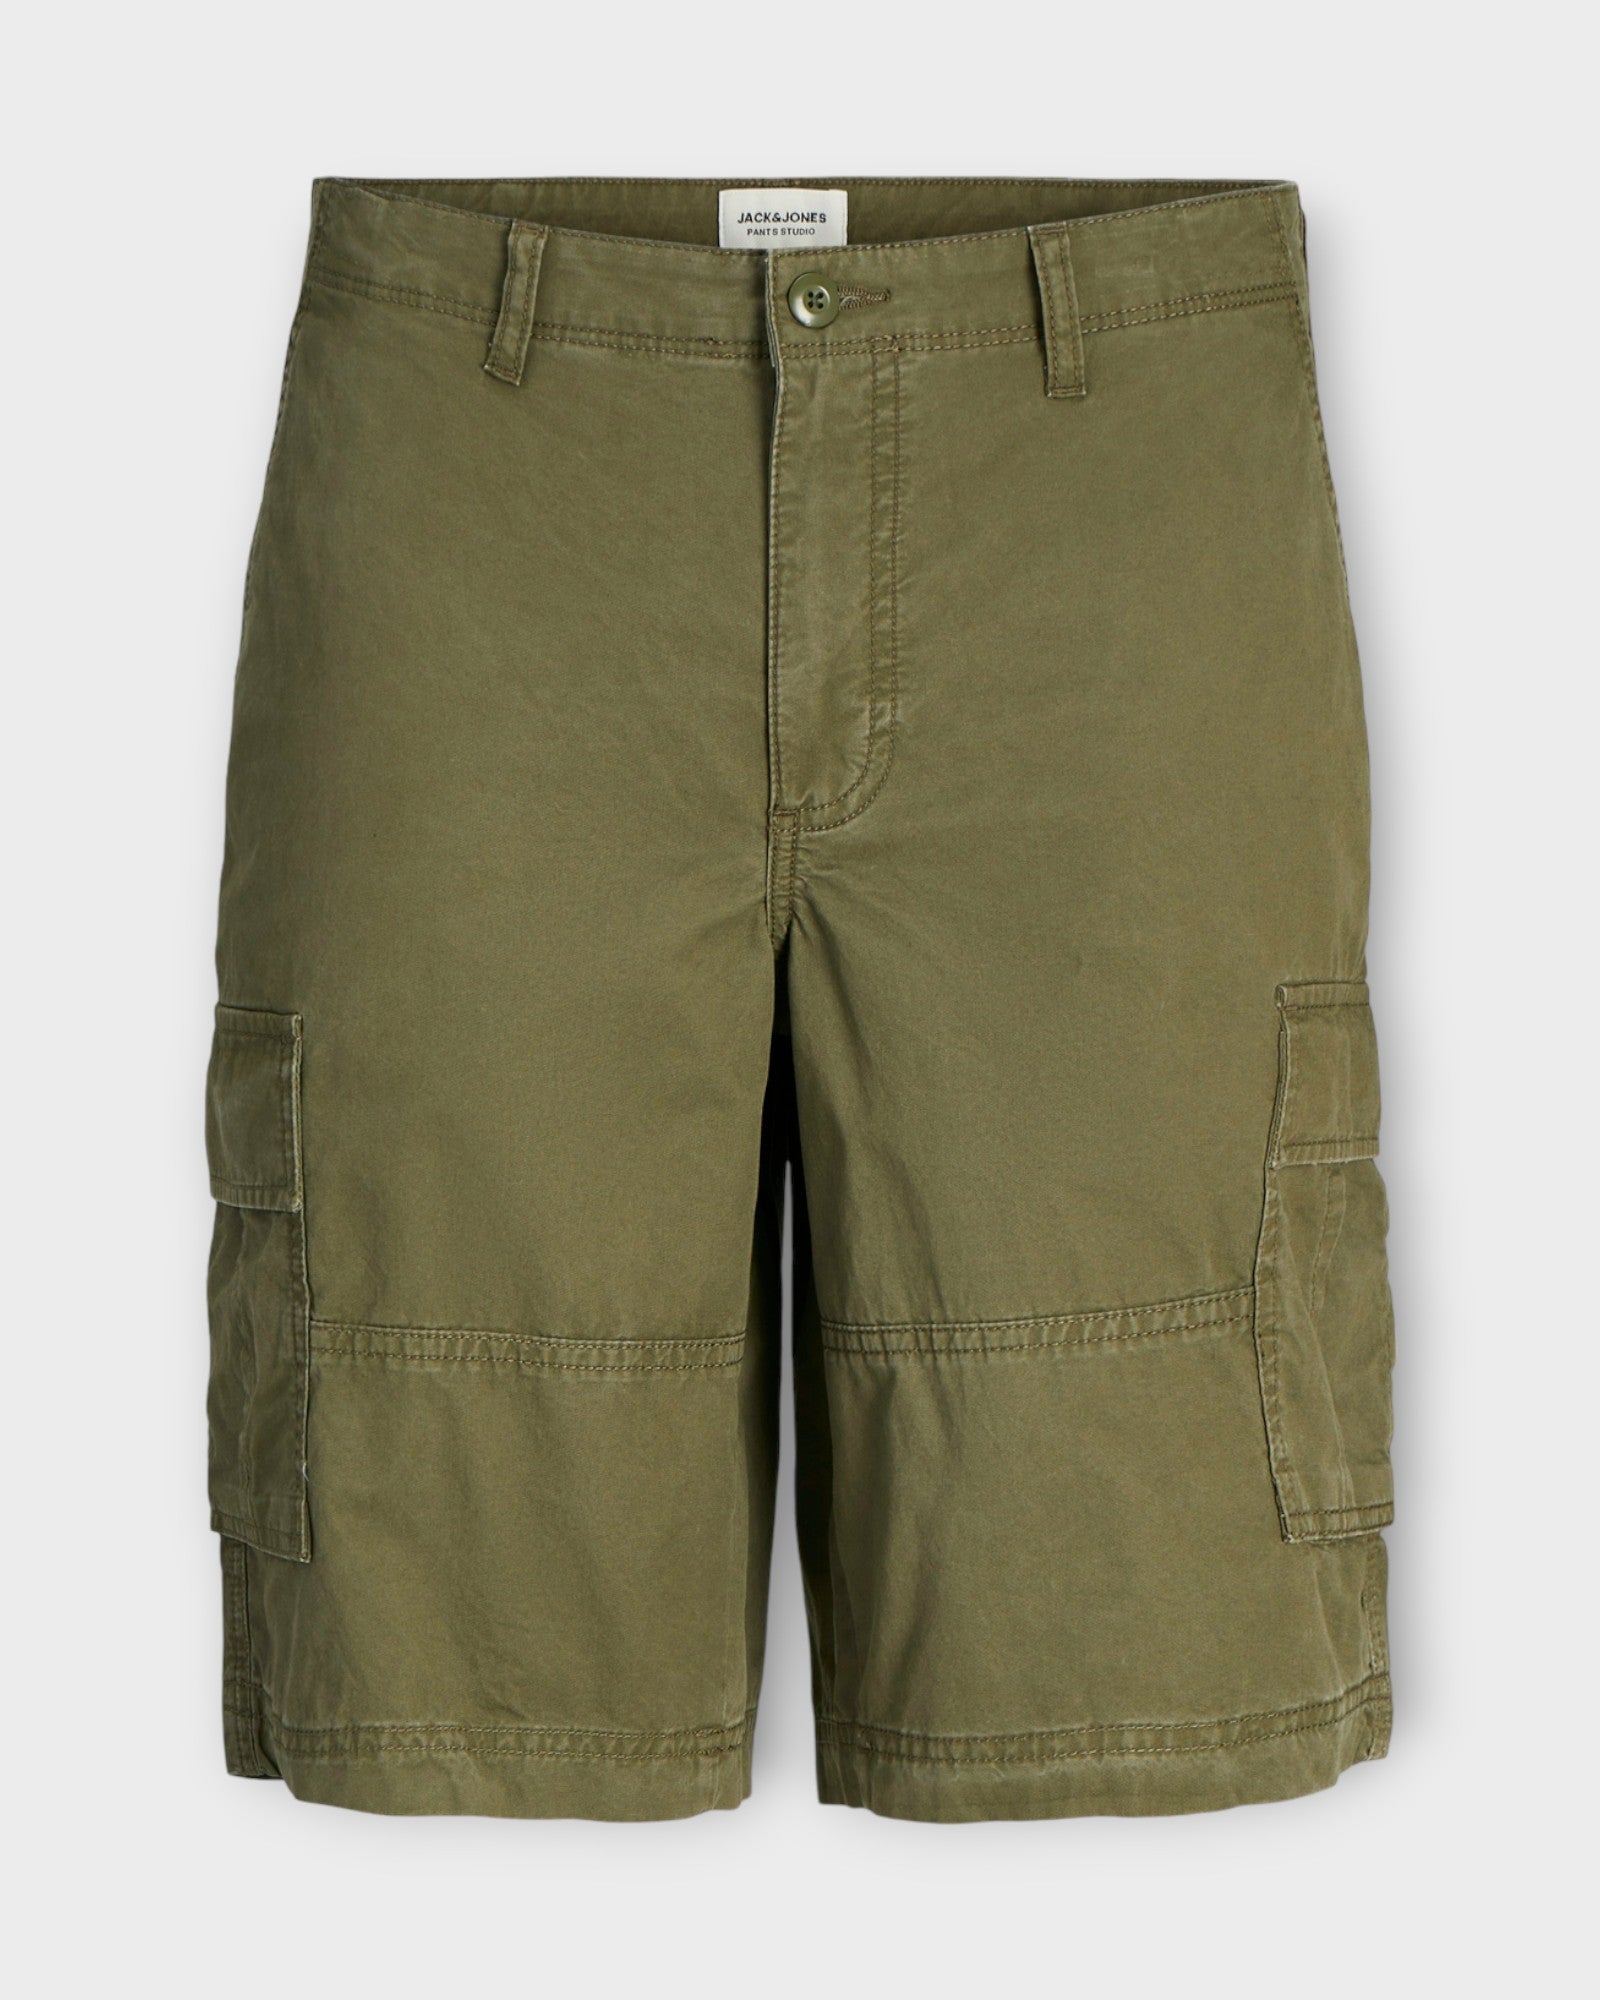 Cole Short Olive Night fra Jack and Jones. Grønne cargo shorts til mænd. Her set forfra.